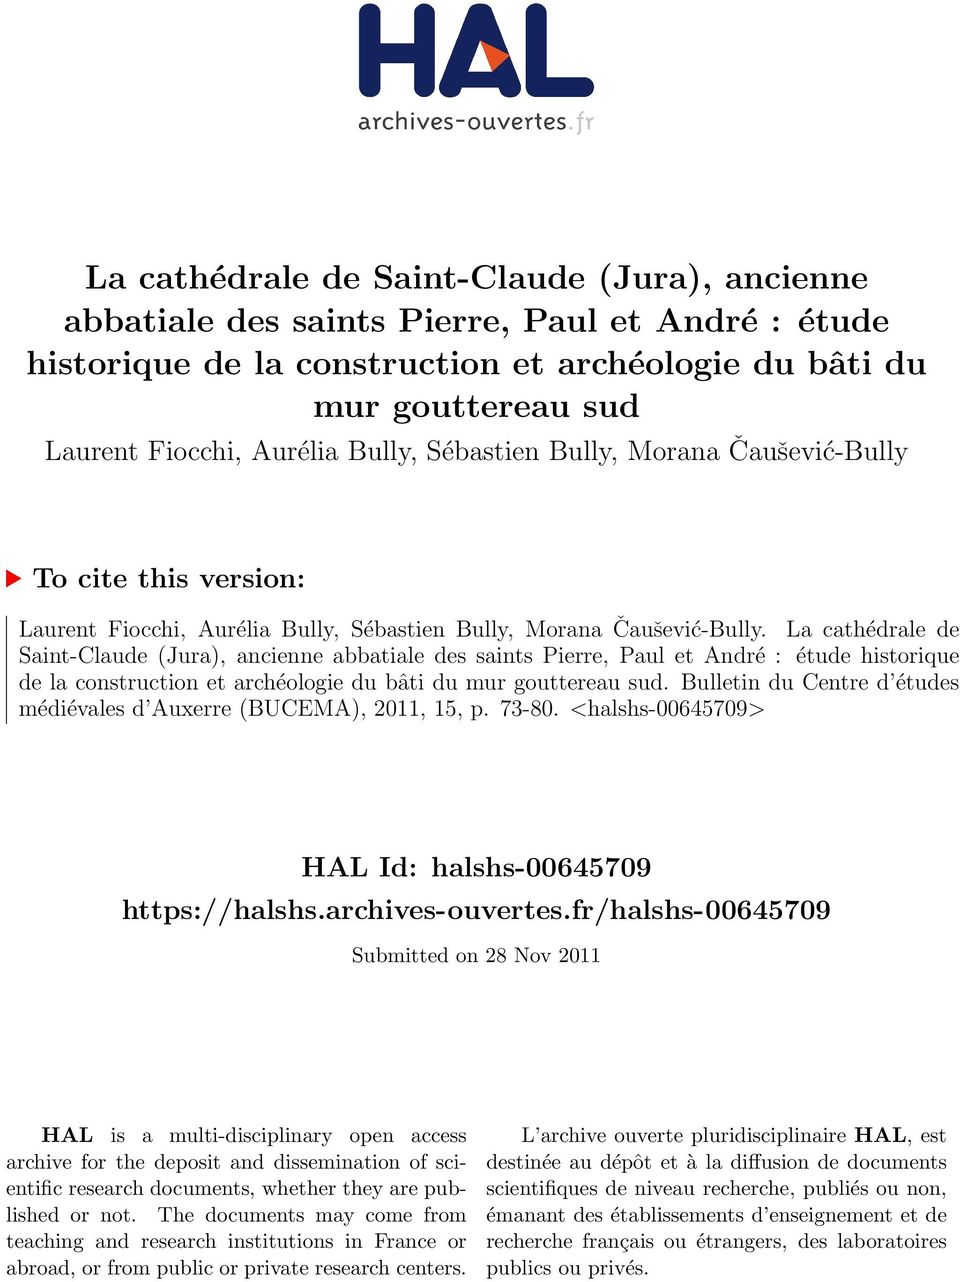 La cathédrale de Saint-Claude (Jura), ancienne abbatiale des saints Pierre, Paul et André : étude historique de la construction et archéologie du bâti du mur gouttereau sud.